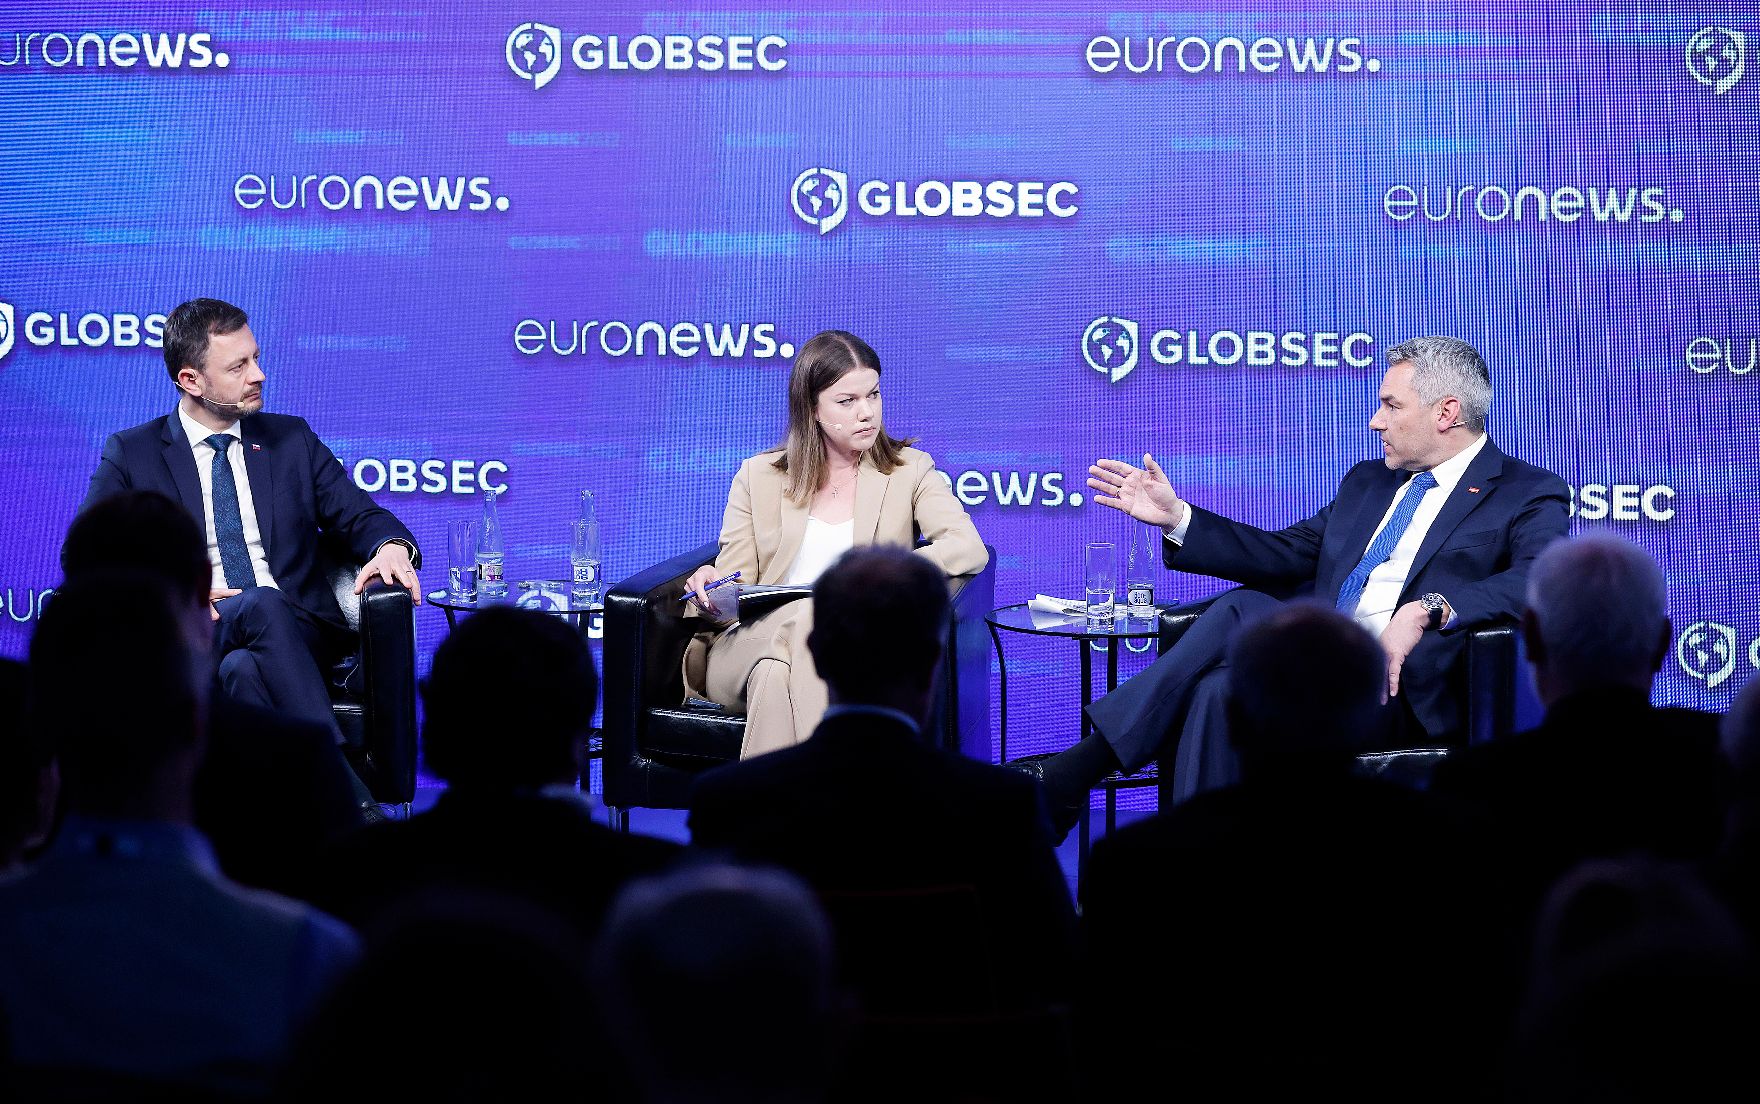 Am 3. Mai 2022 reiste Bundeskanzler Karl Nehammer (r.) zum GLOBSEC2022 Forum nach Bratislava. Im Bild bei der Paneldiskussion.